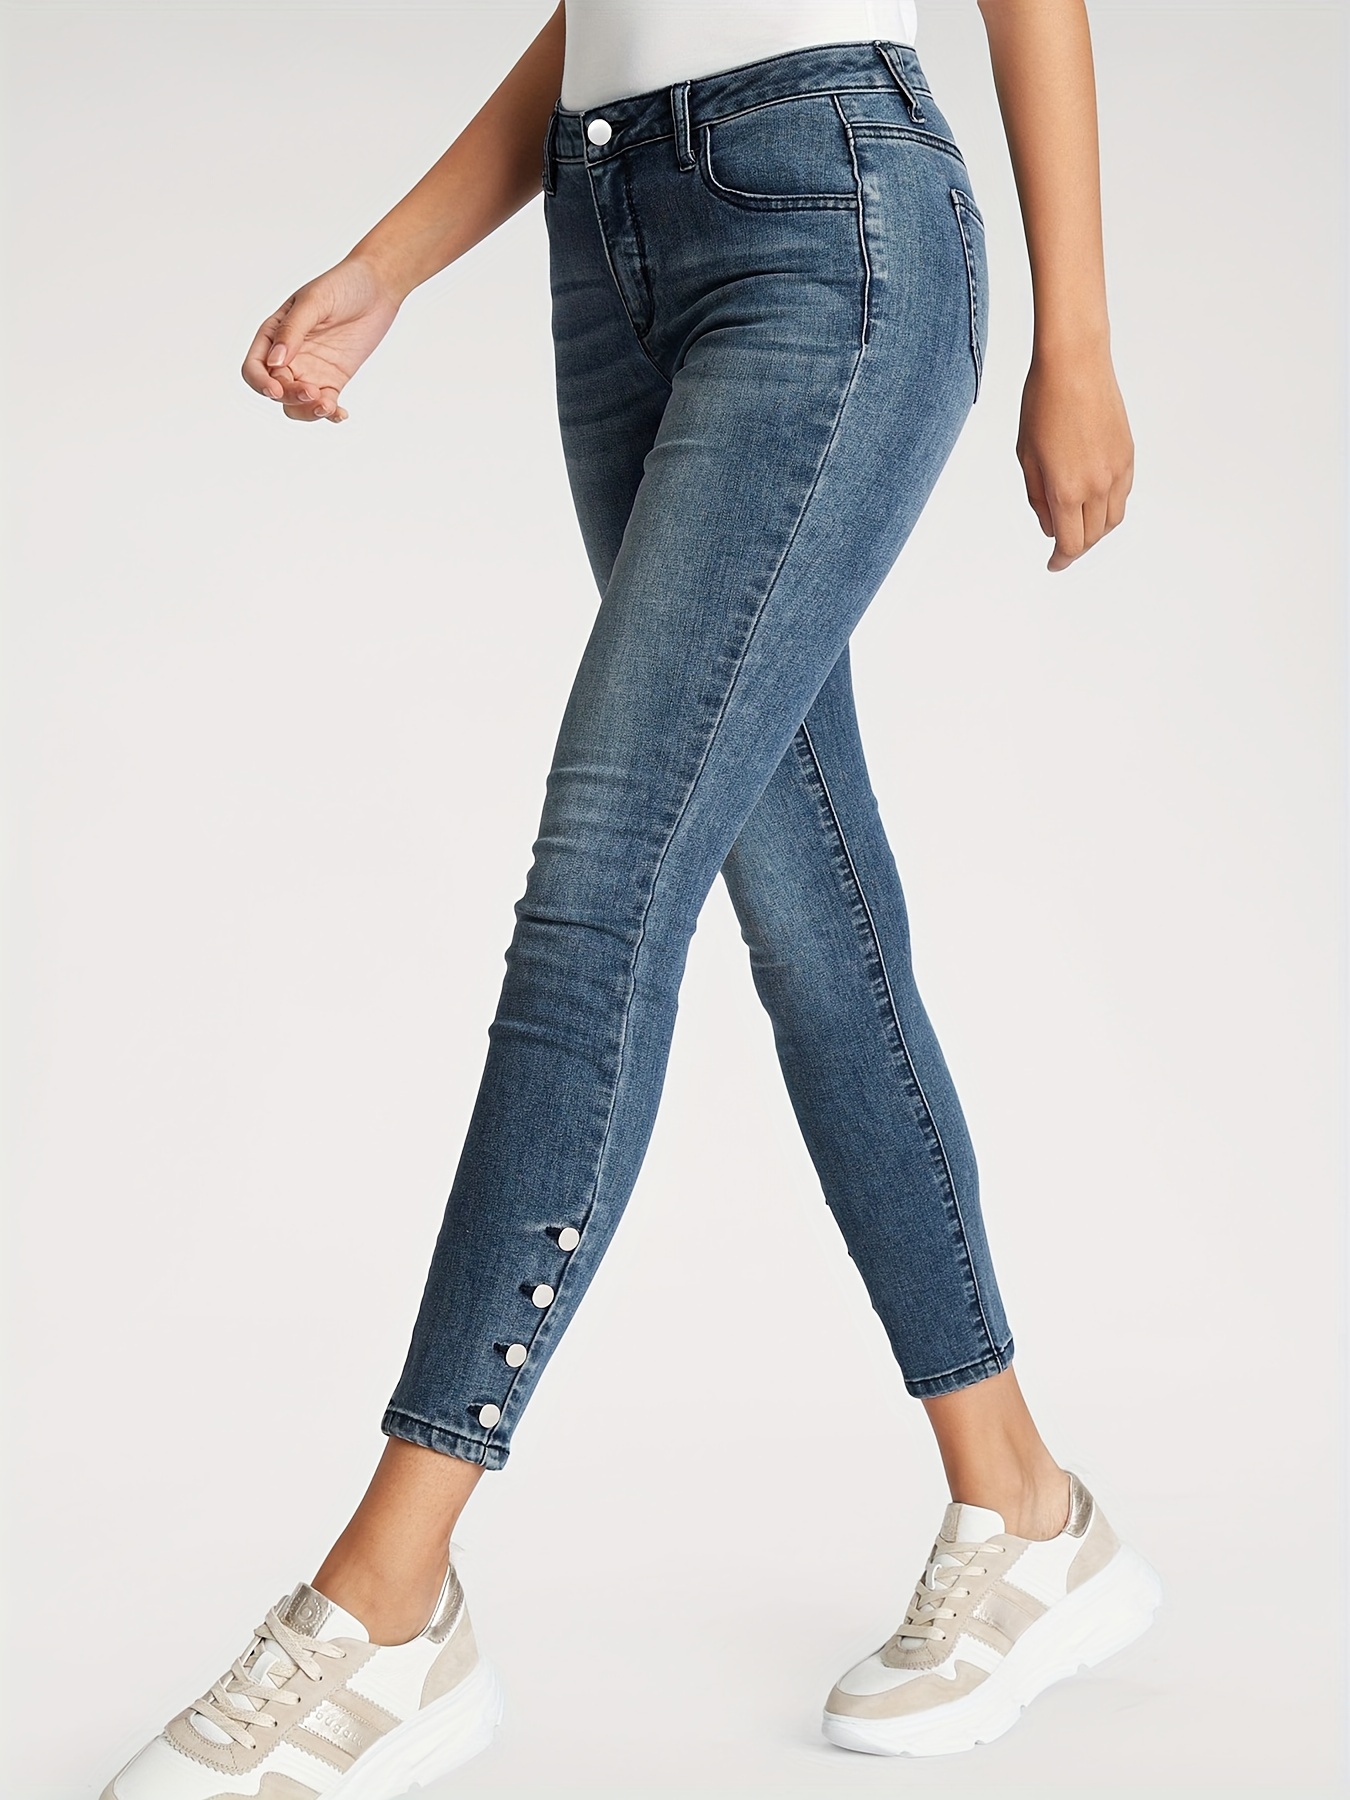 Jeans Ajustados De Cintura Alta * Pantalones De Mezclilla De Estilo  Callejero Ultradesgastados, Jeans Y Ropa De Mujer